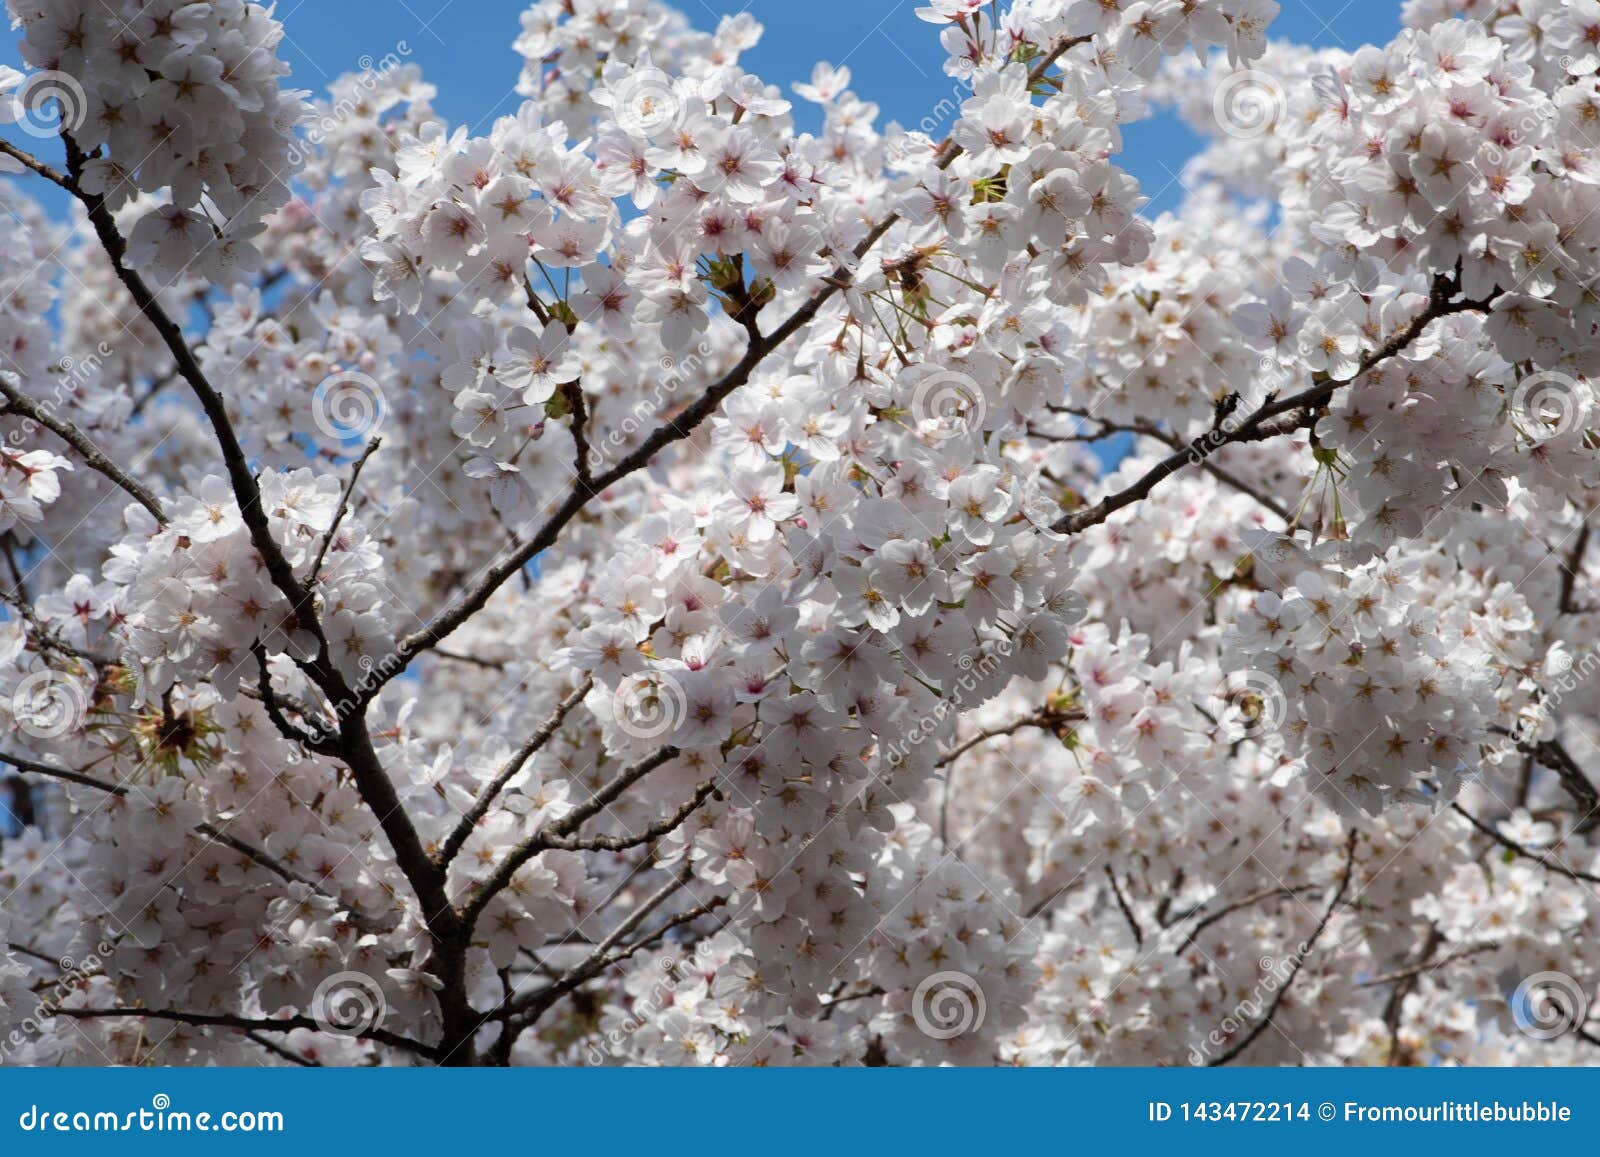 Recopilación imagen 99 flor de cerezo blanco